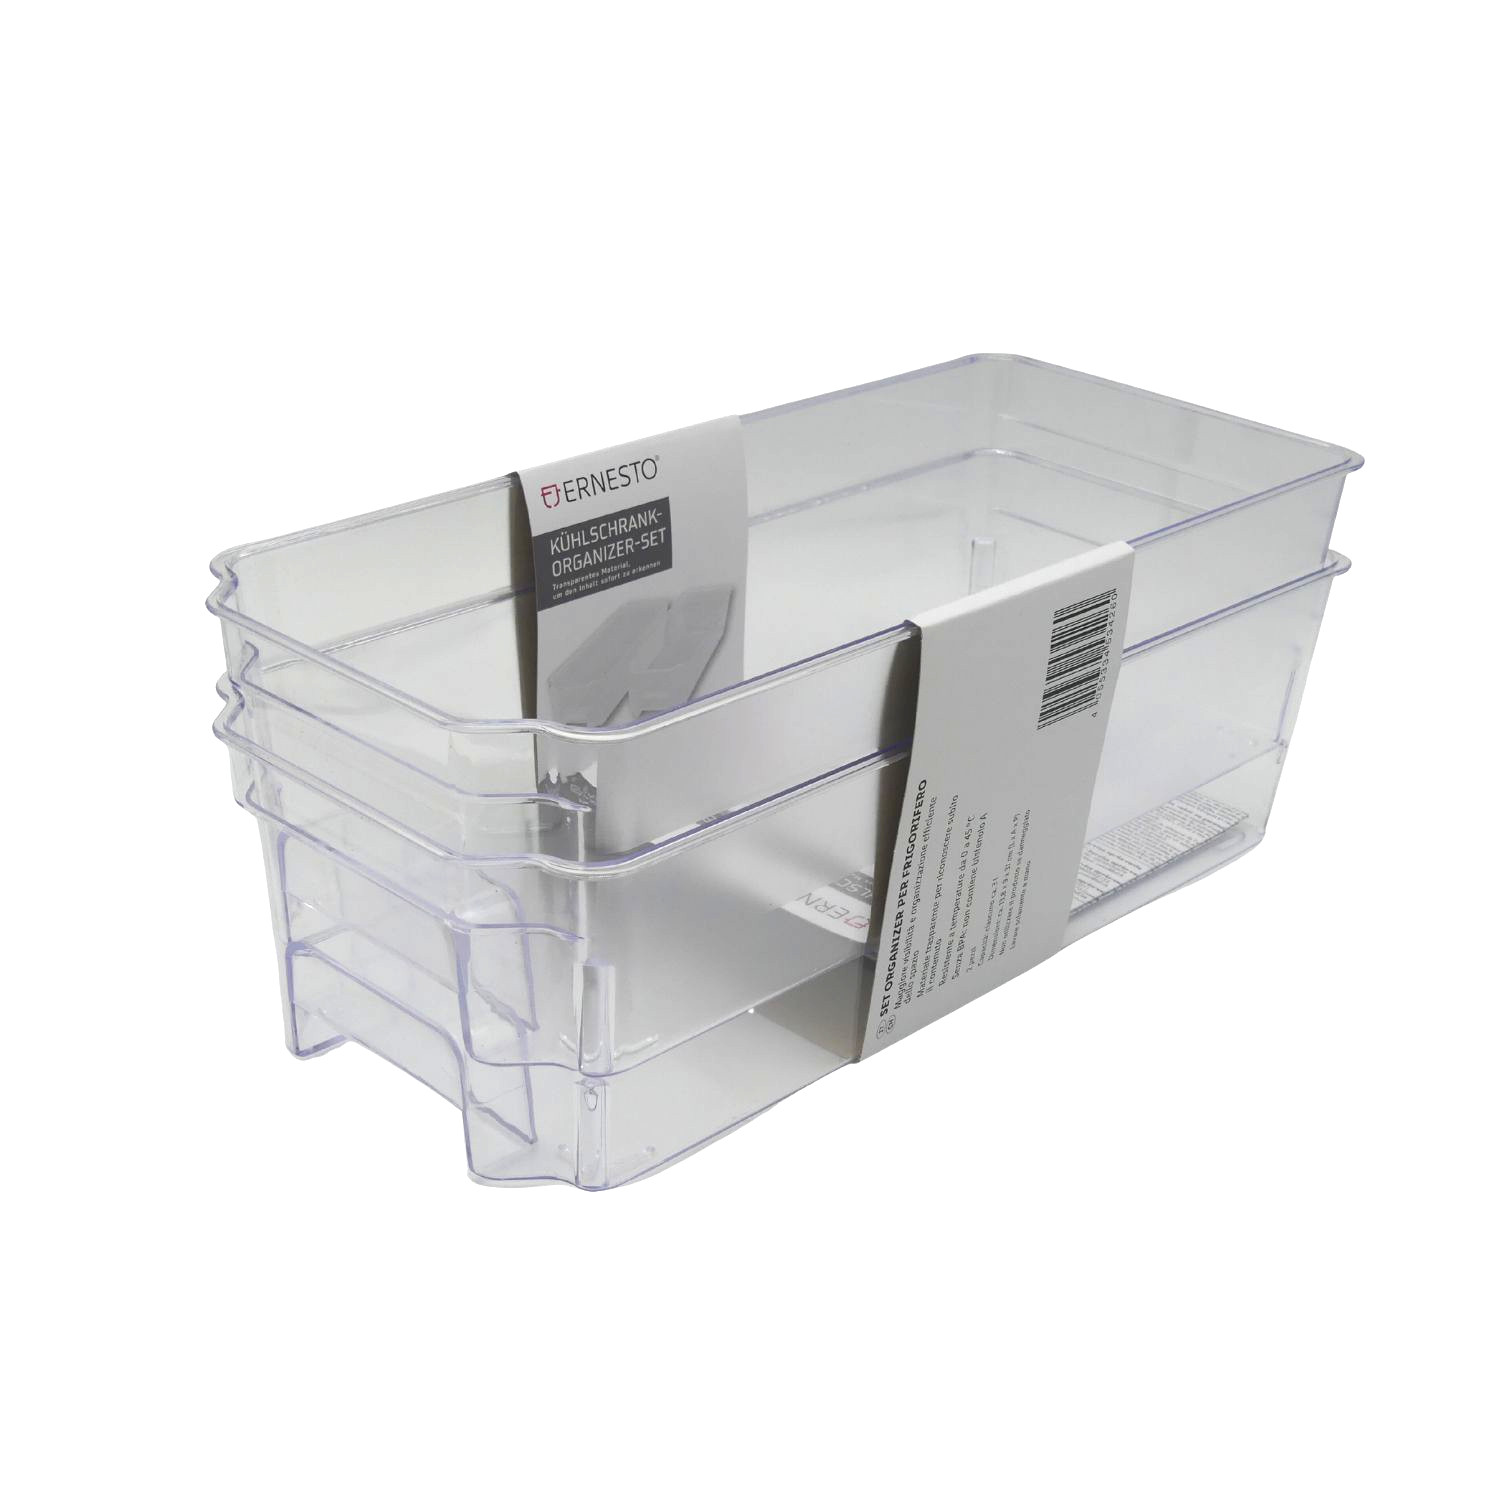 ERNESTO Kühlschrank-Organizer-Set 3 Liter transparent Temperaturbeständig  mehr Übersicht effizient | Küche | Haushalt | Haus & Garten | Aktionen |  Alles für Ihren Drucker - Druckerpatronen günstig kaufen!